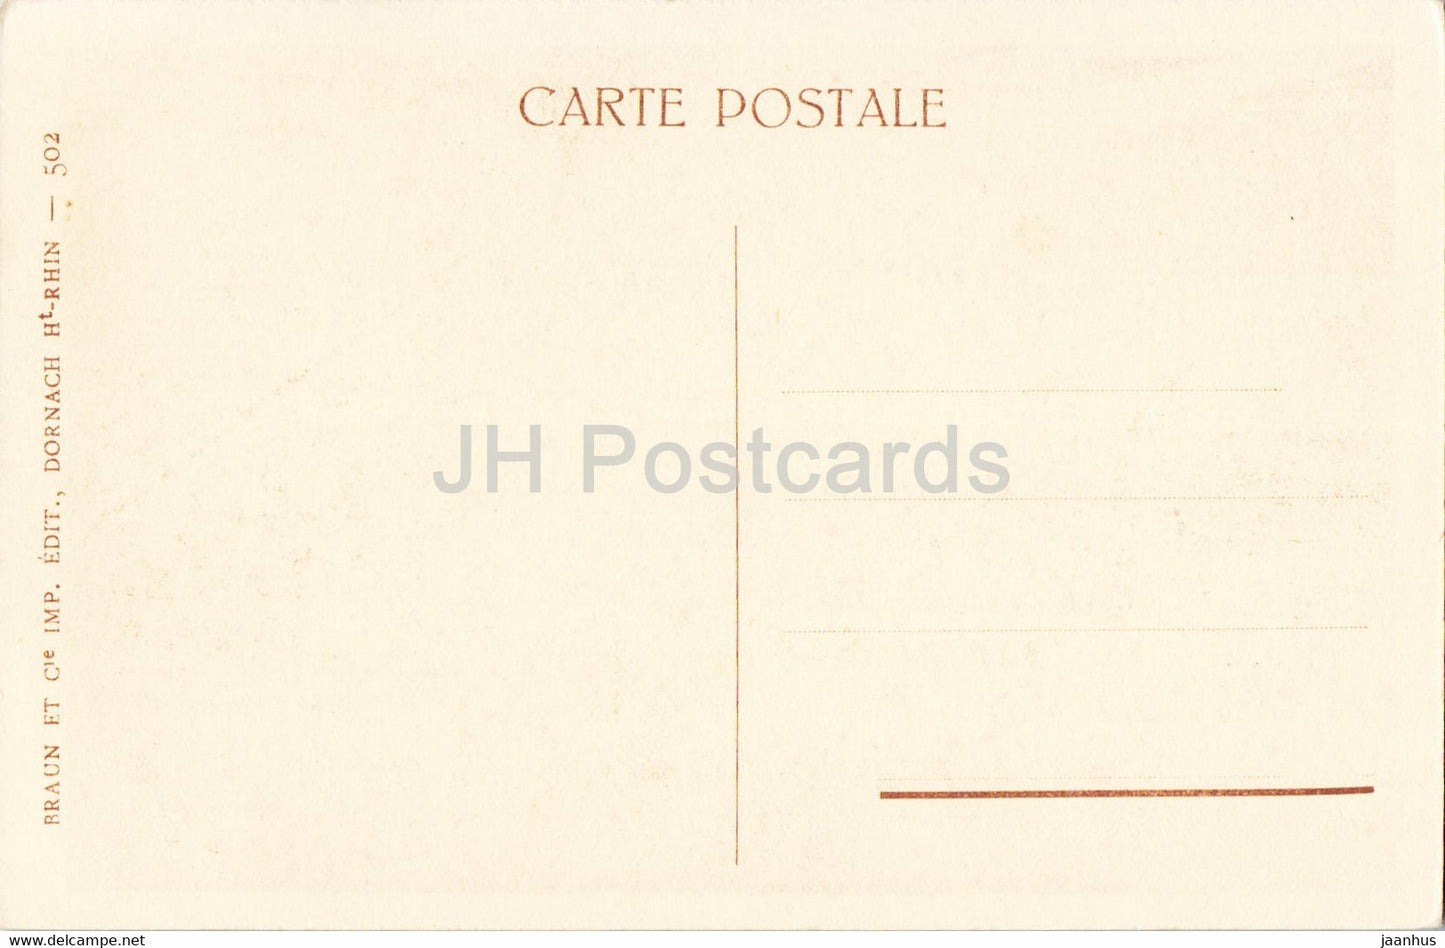 Riquewihr - Le Dolder - alte Postkarte - Frankreich - unbenutzt